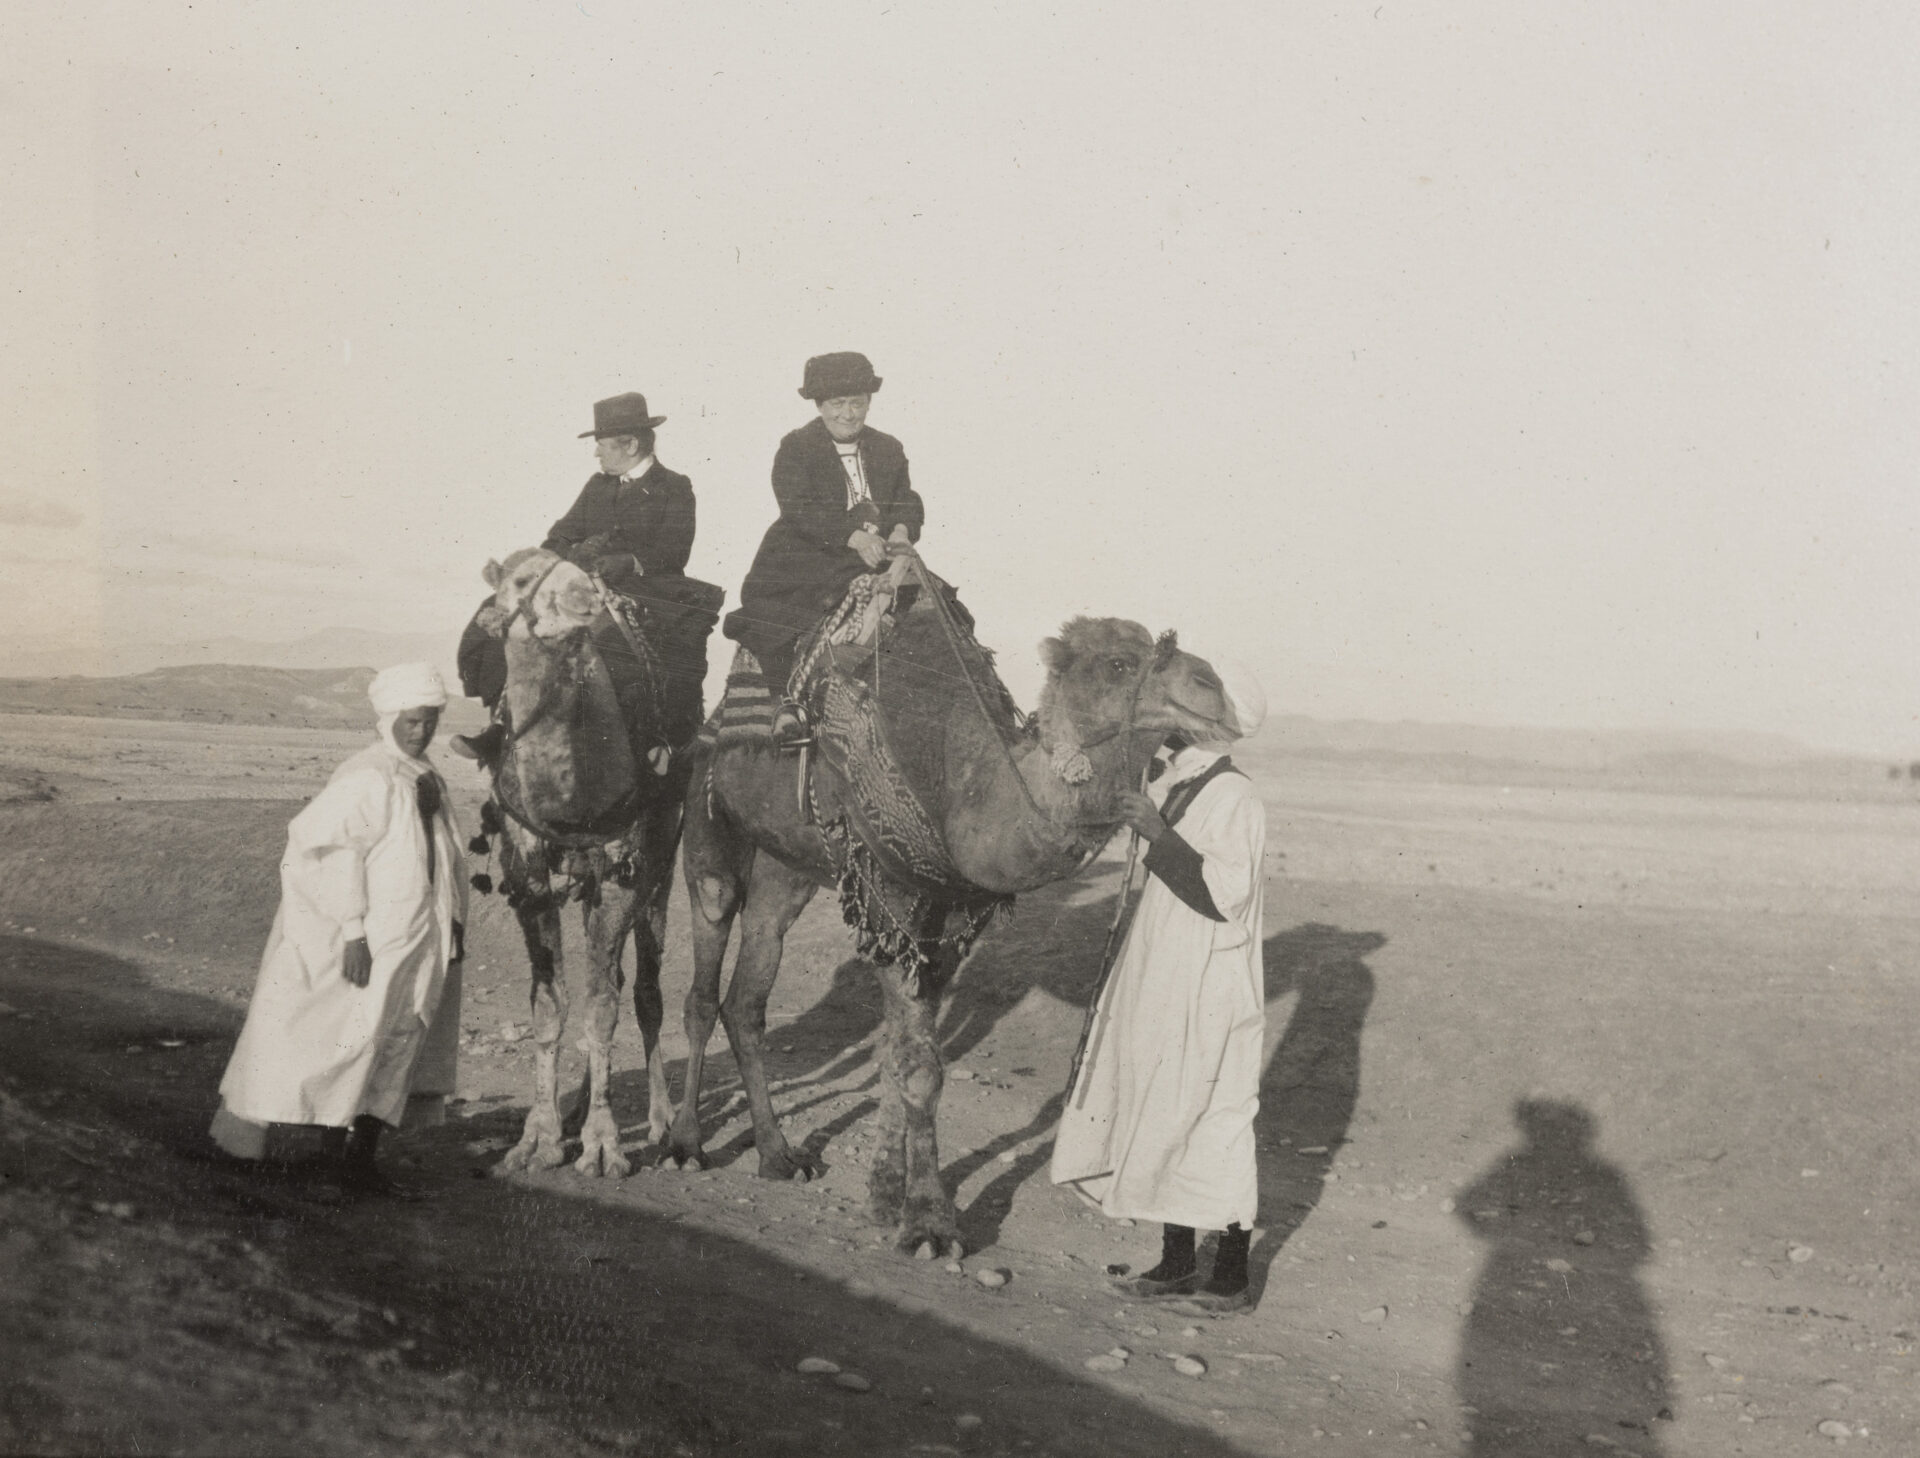 Jeanne Smith, aus dem Fotoalbum der Reise durch Tunesien und Algerien, November Dezember 1913